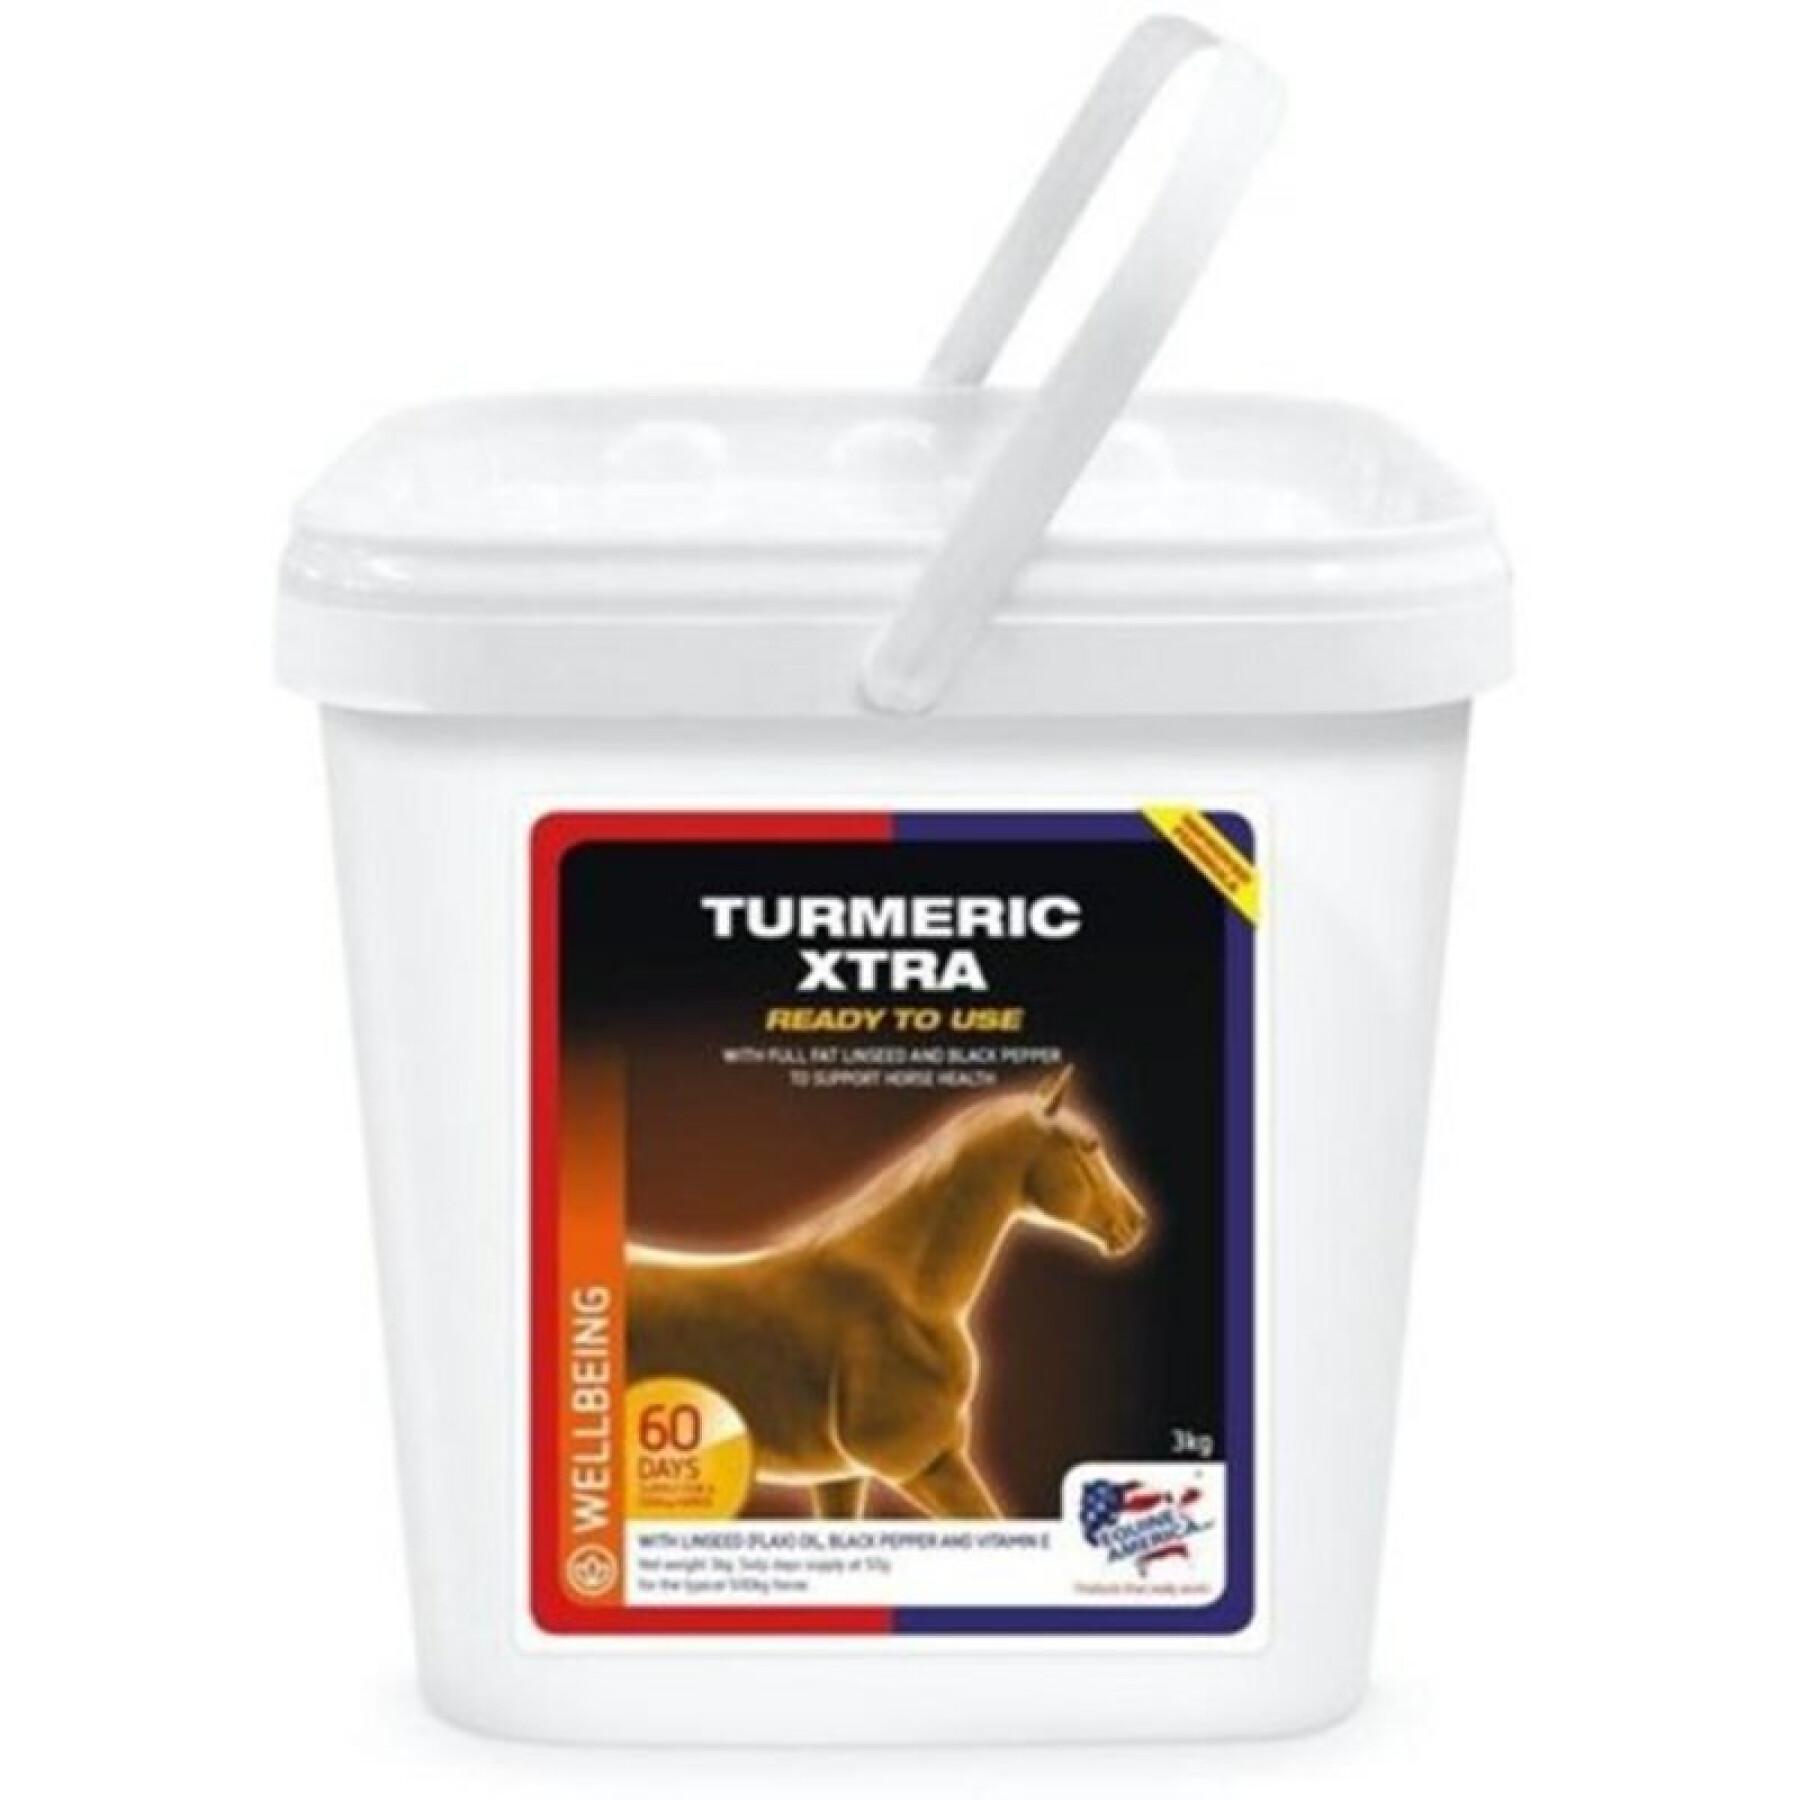 Aanvullend diervoeder voor paarden Equine America Turmeric xtra 3 kg